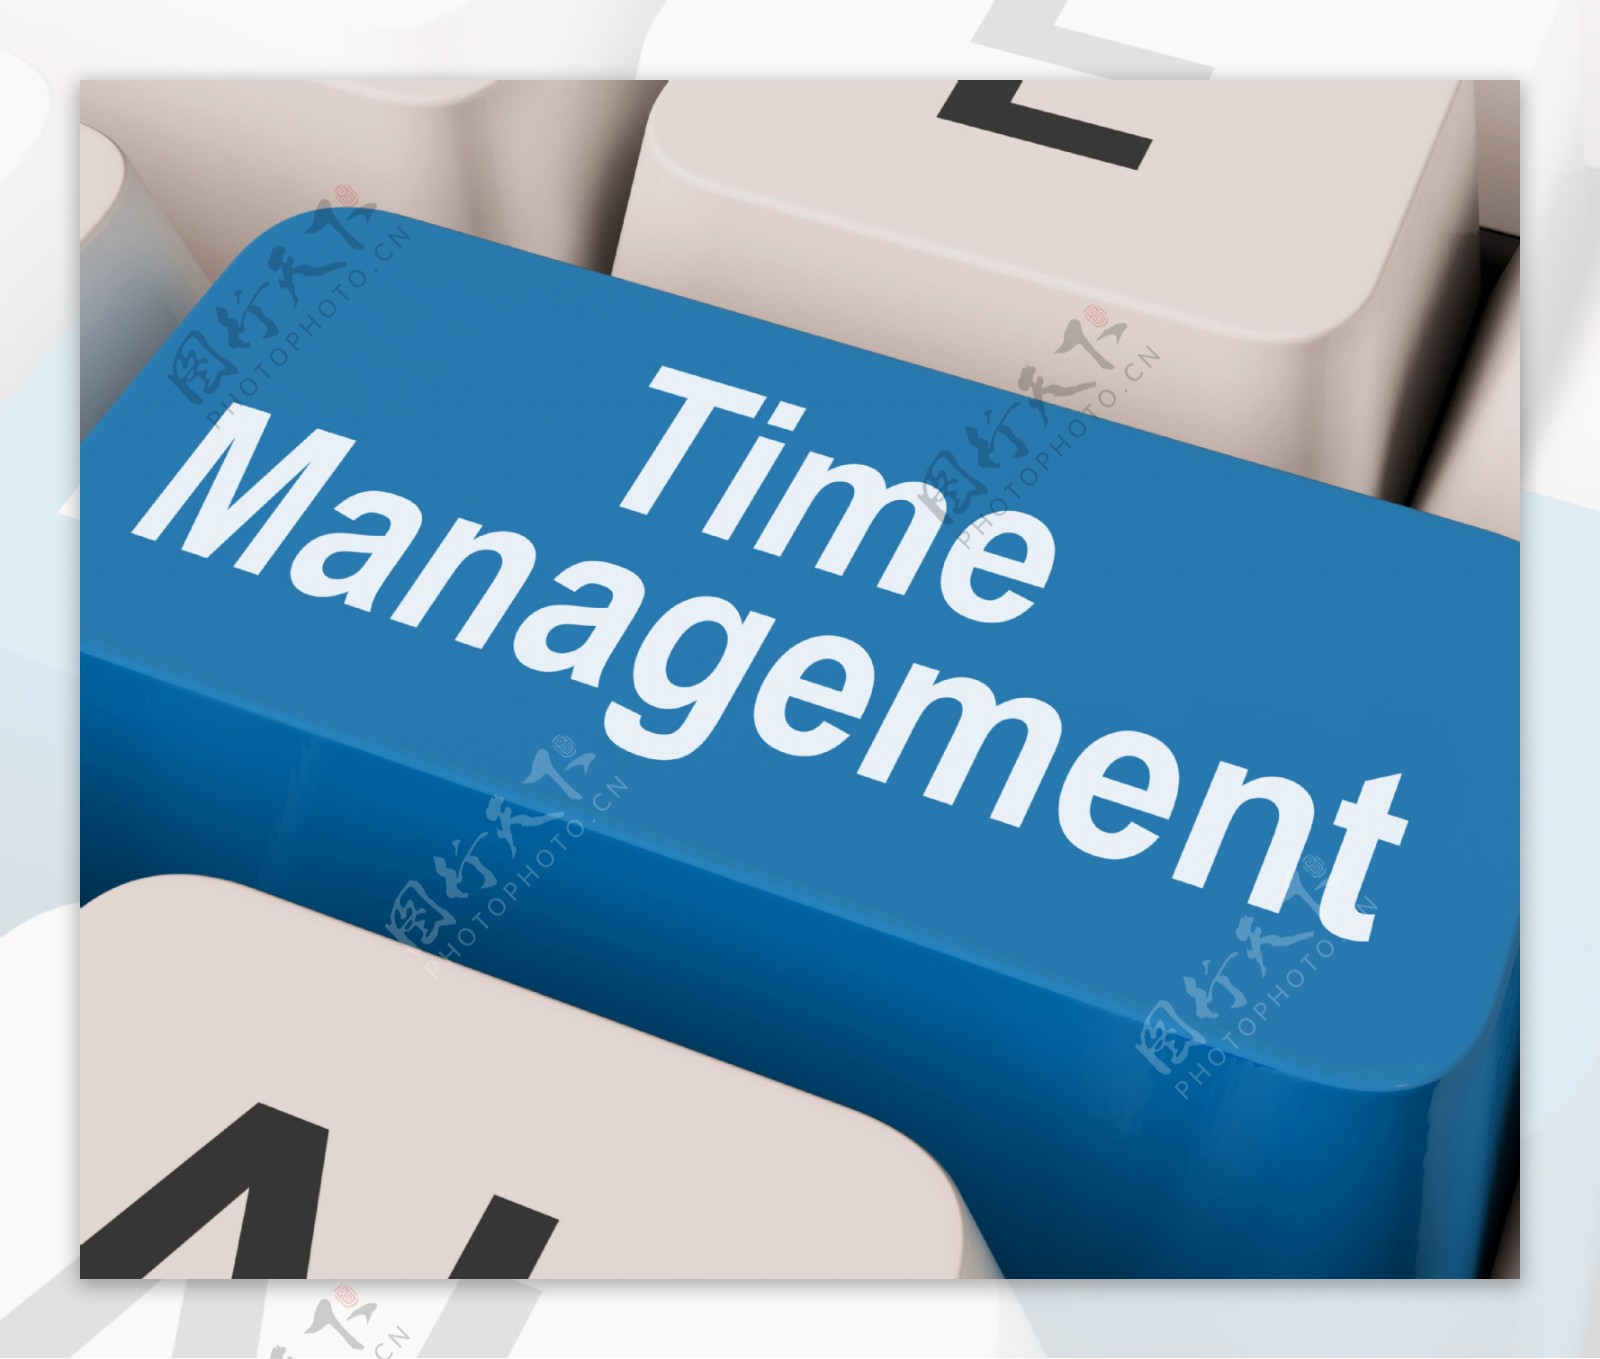 时间管理的关键显示组织安排在线